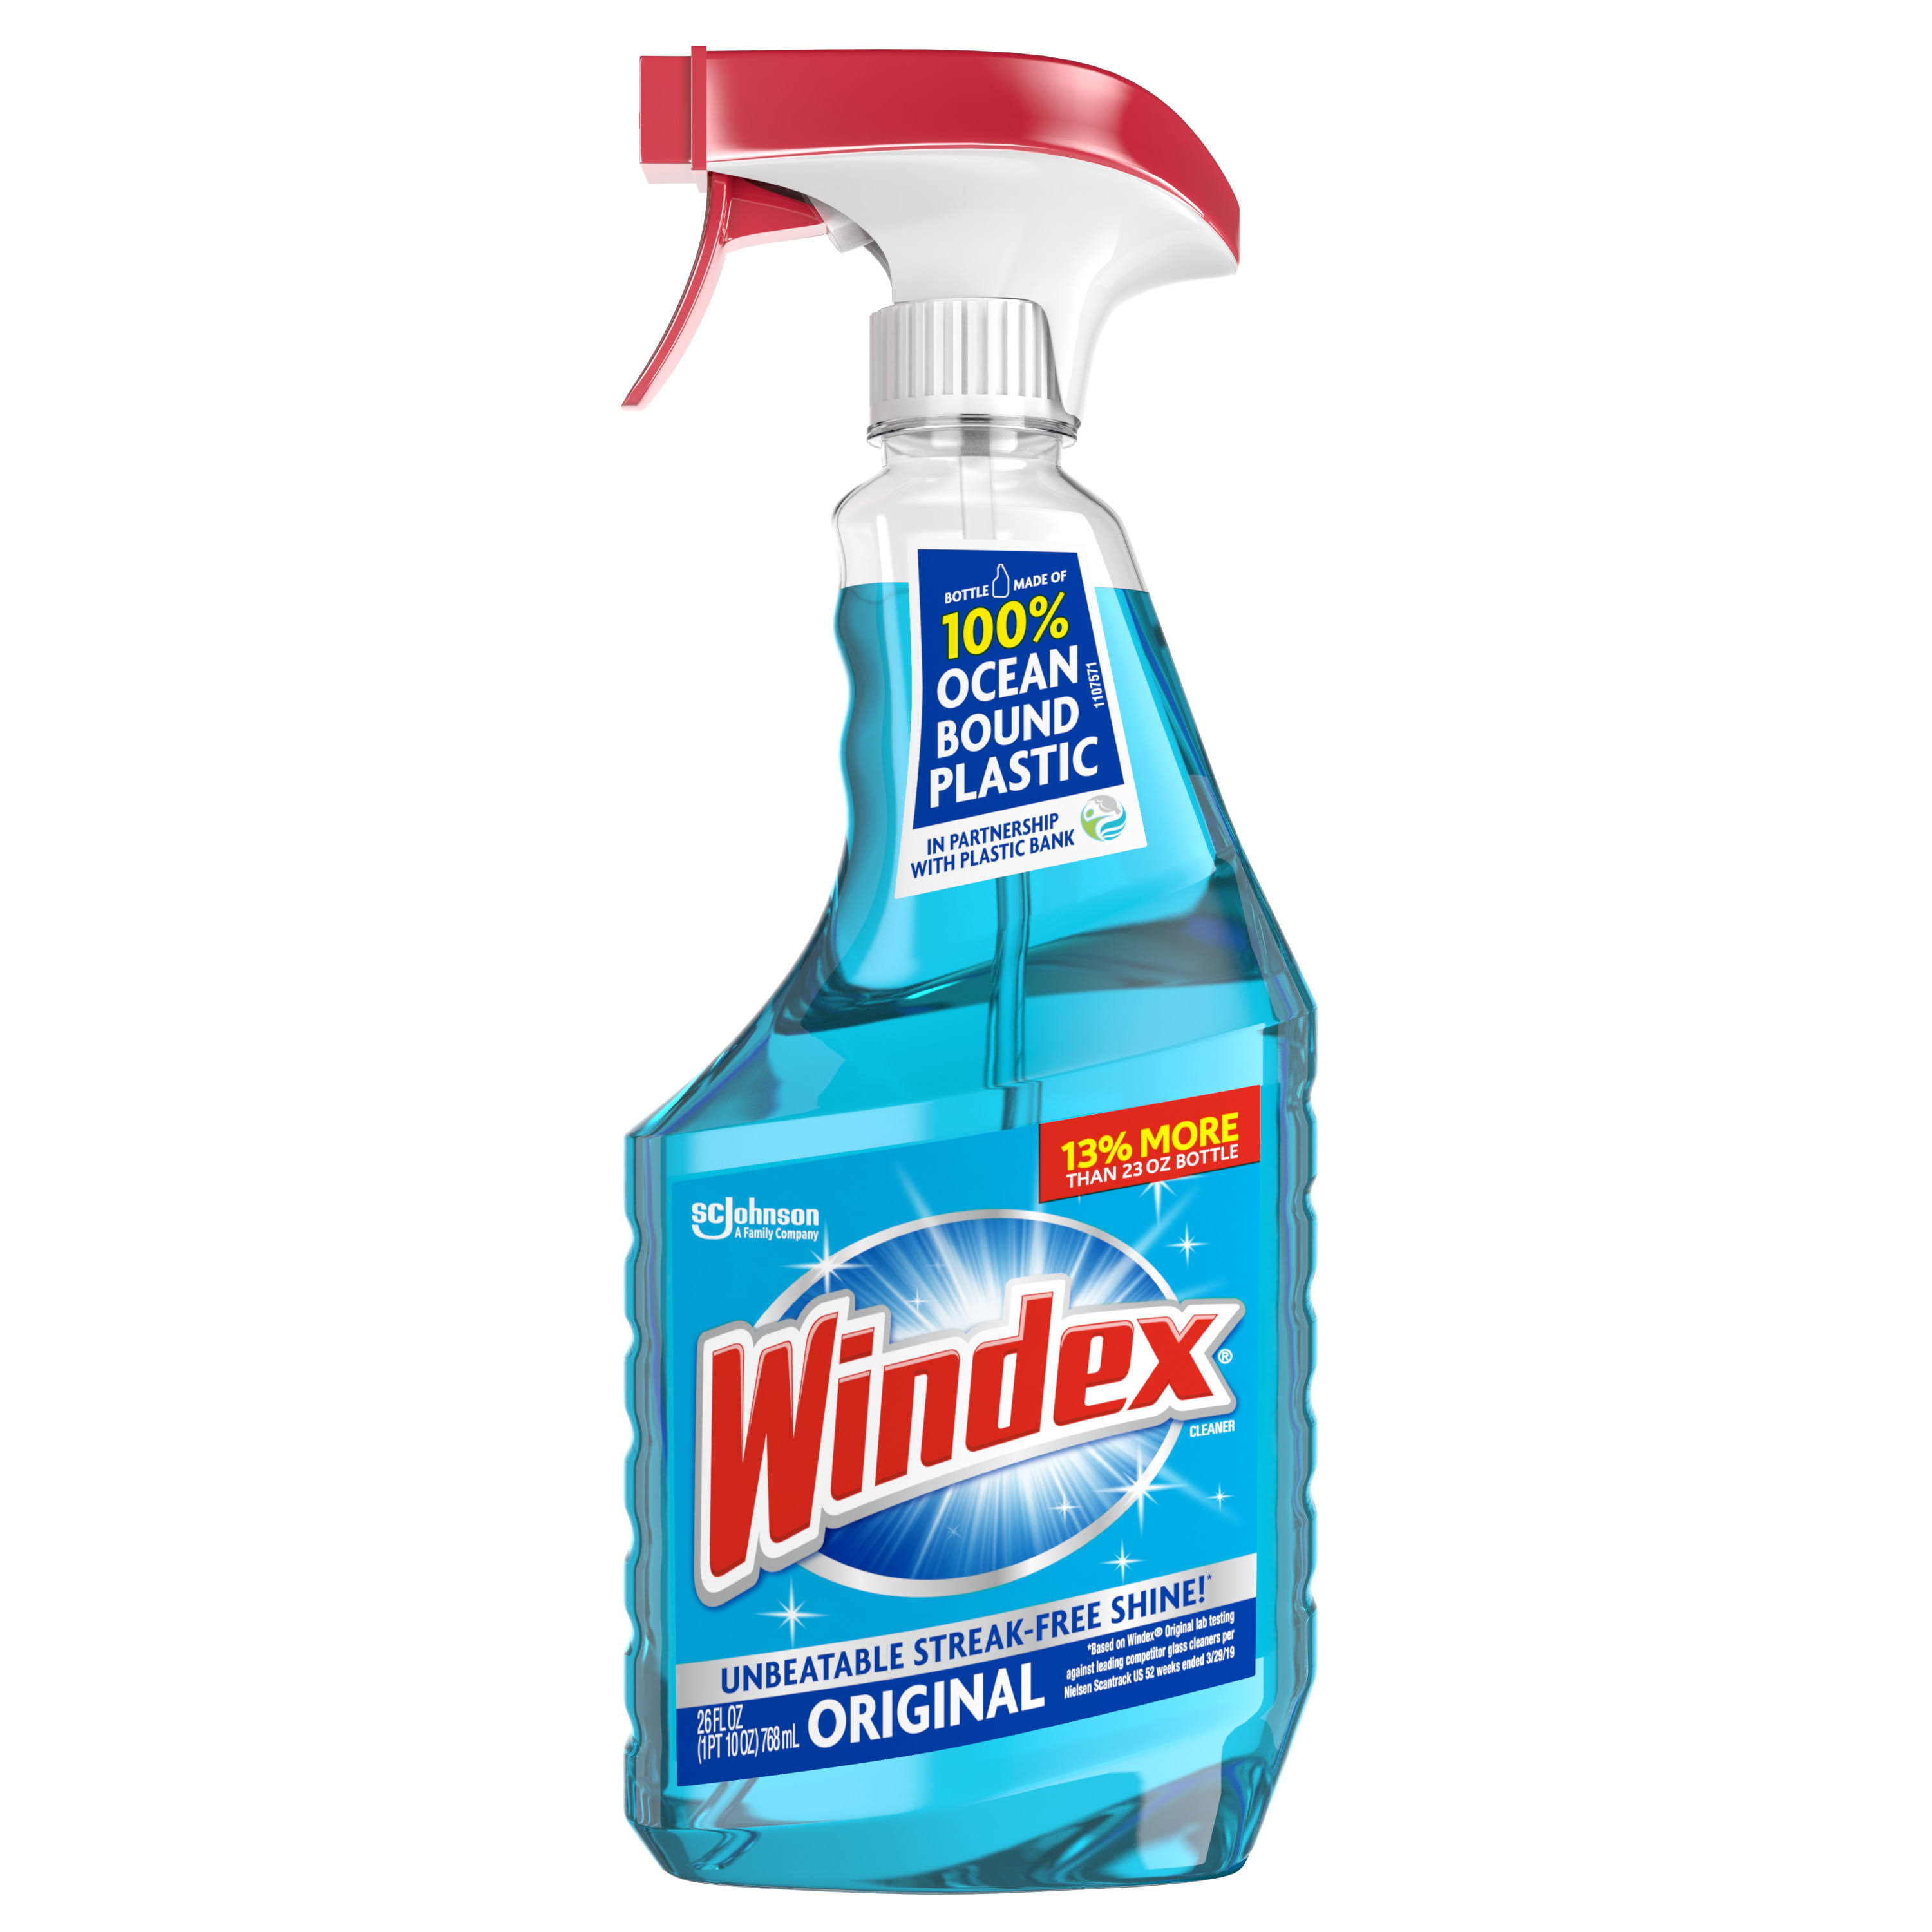 Windex Glass Cleaner Spray Bottle, Original Blue, 26 fl oz